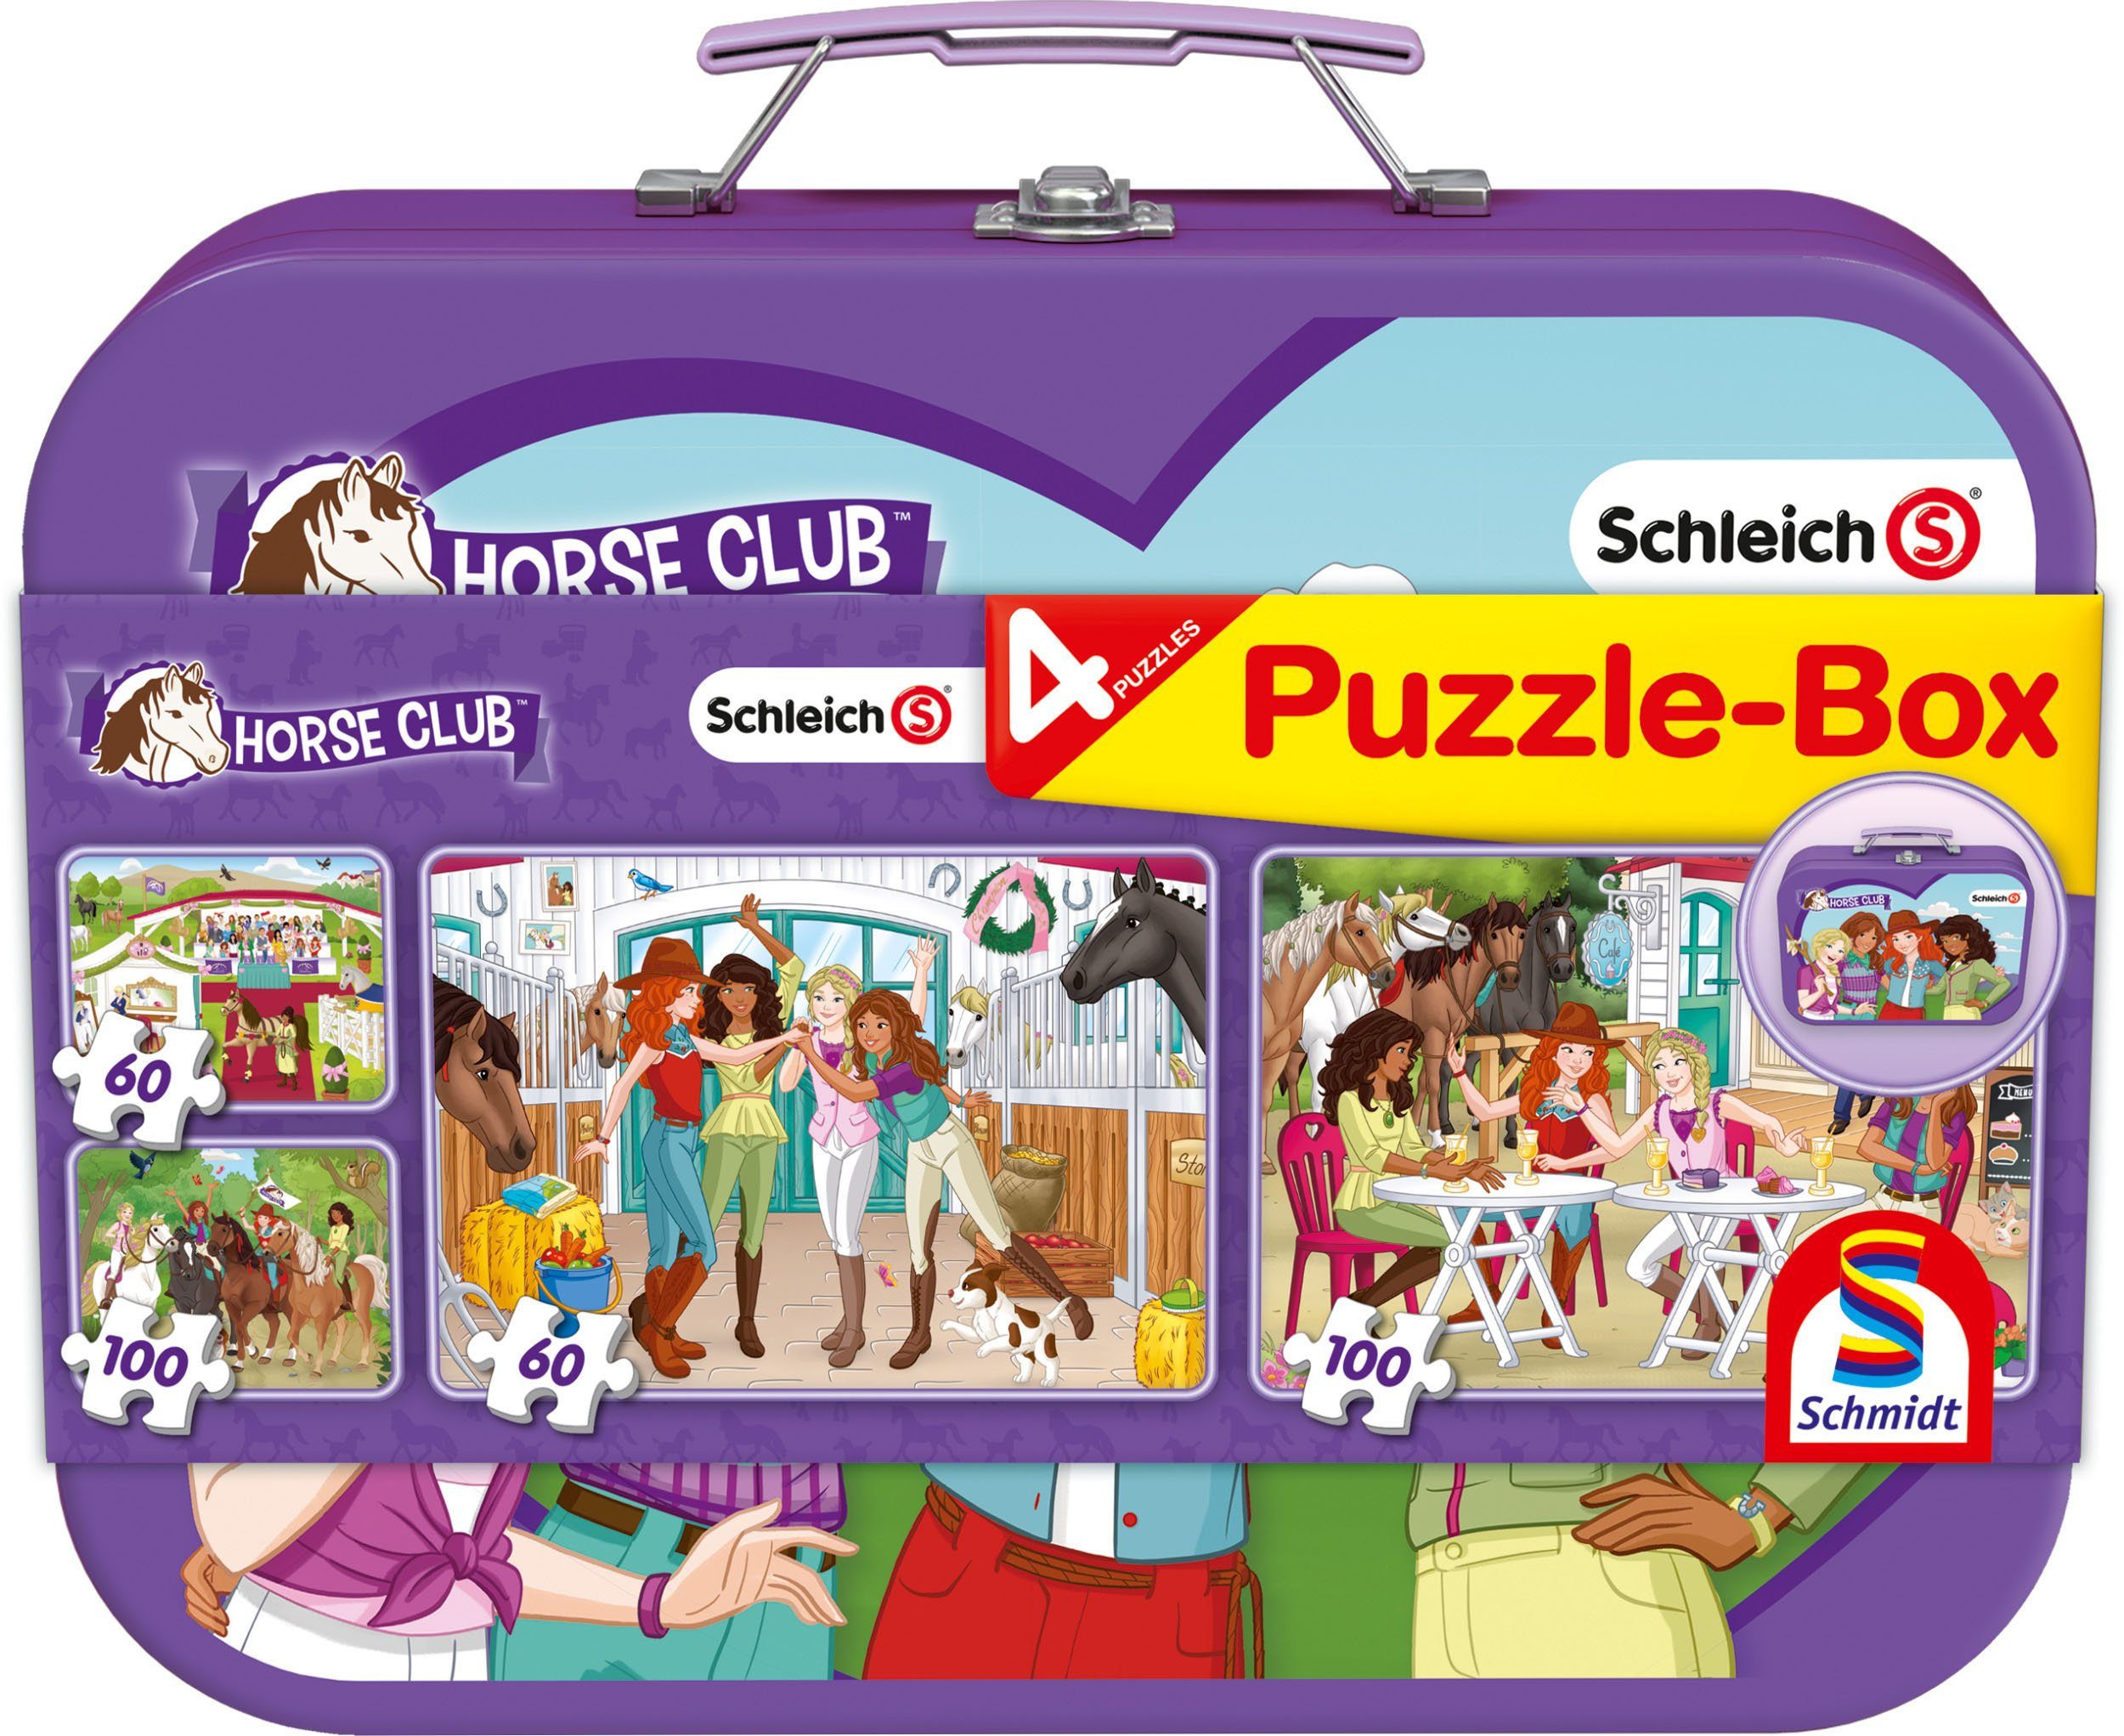 Club, Puzzleteile, Schleich, Metallkoffer 2x60, Schmidt Puzzle im Spiele Puzzle-Box, 2x100 Teile, Horse 320